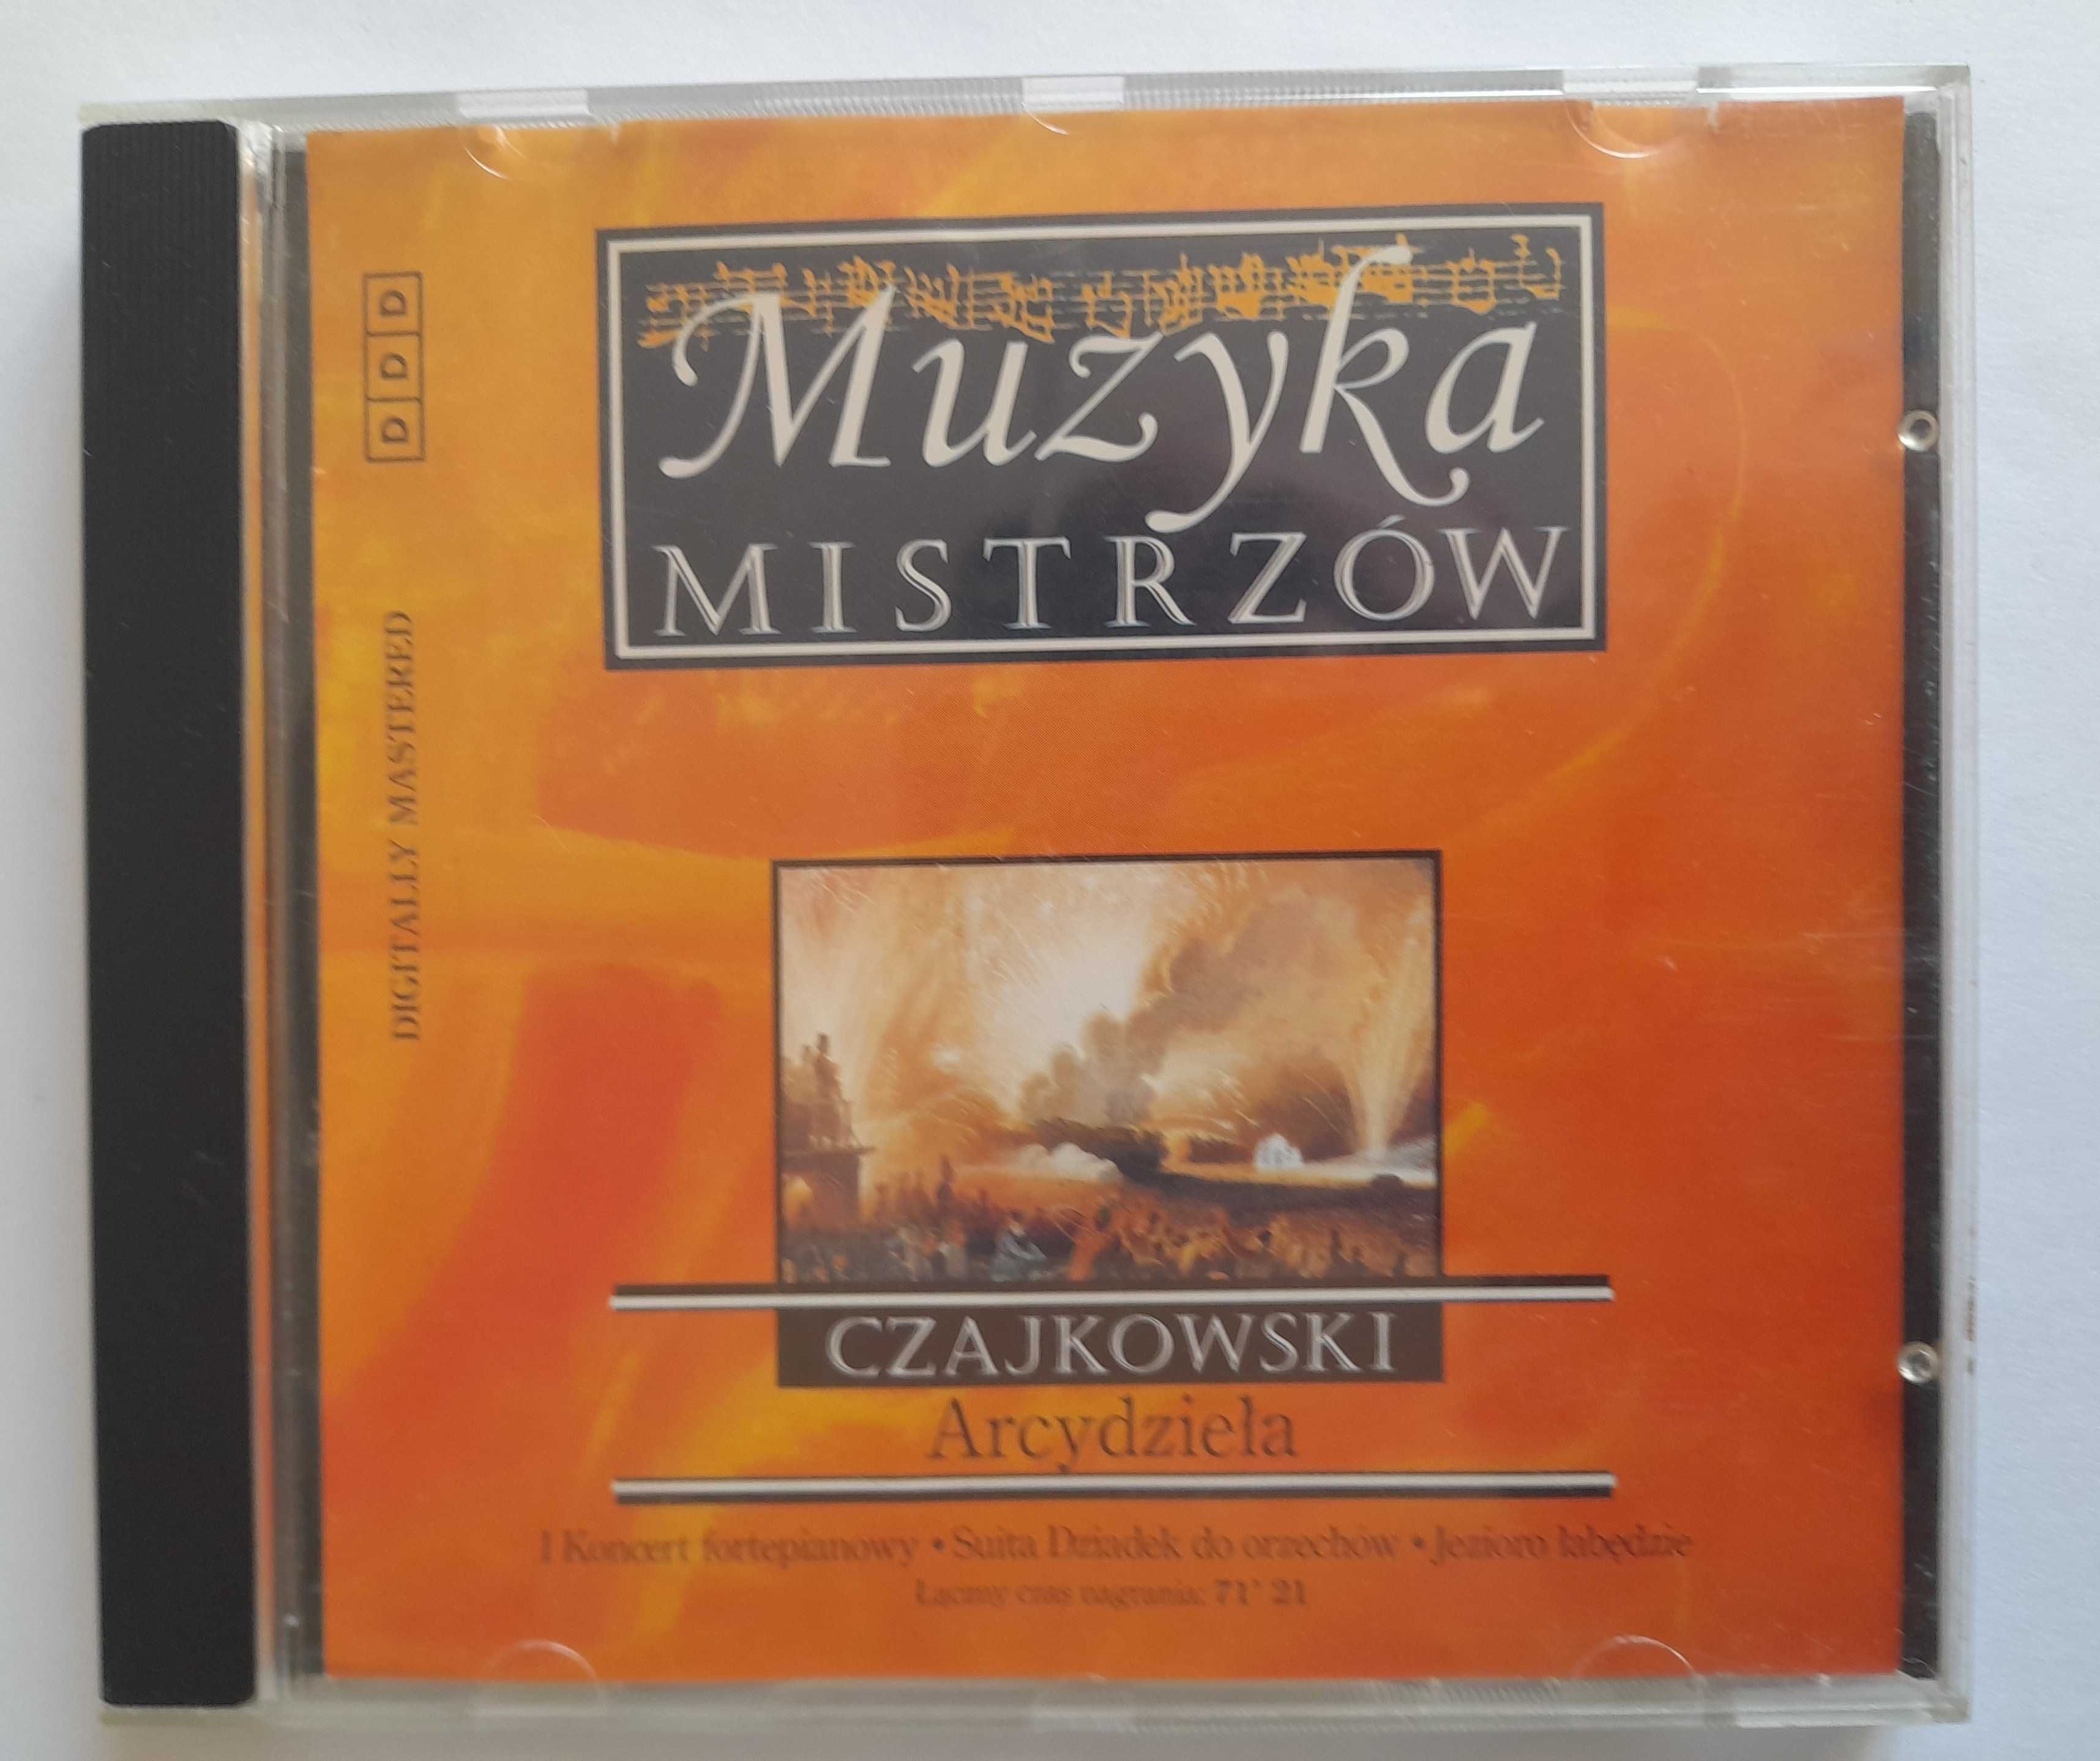 CD Muzyka Mistrzów. CZAJKOWSKI Arcydzieła